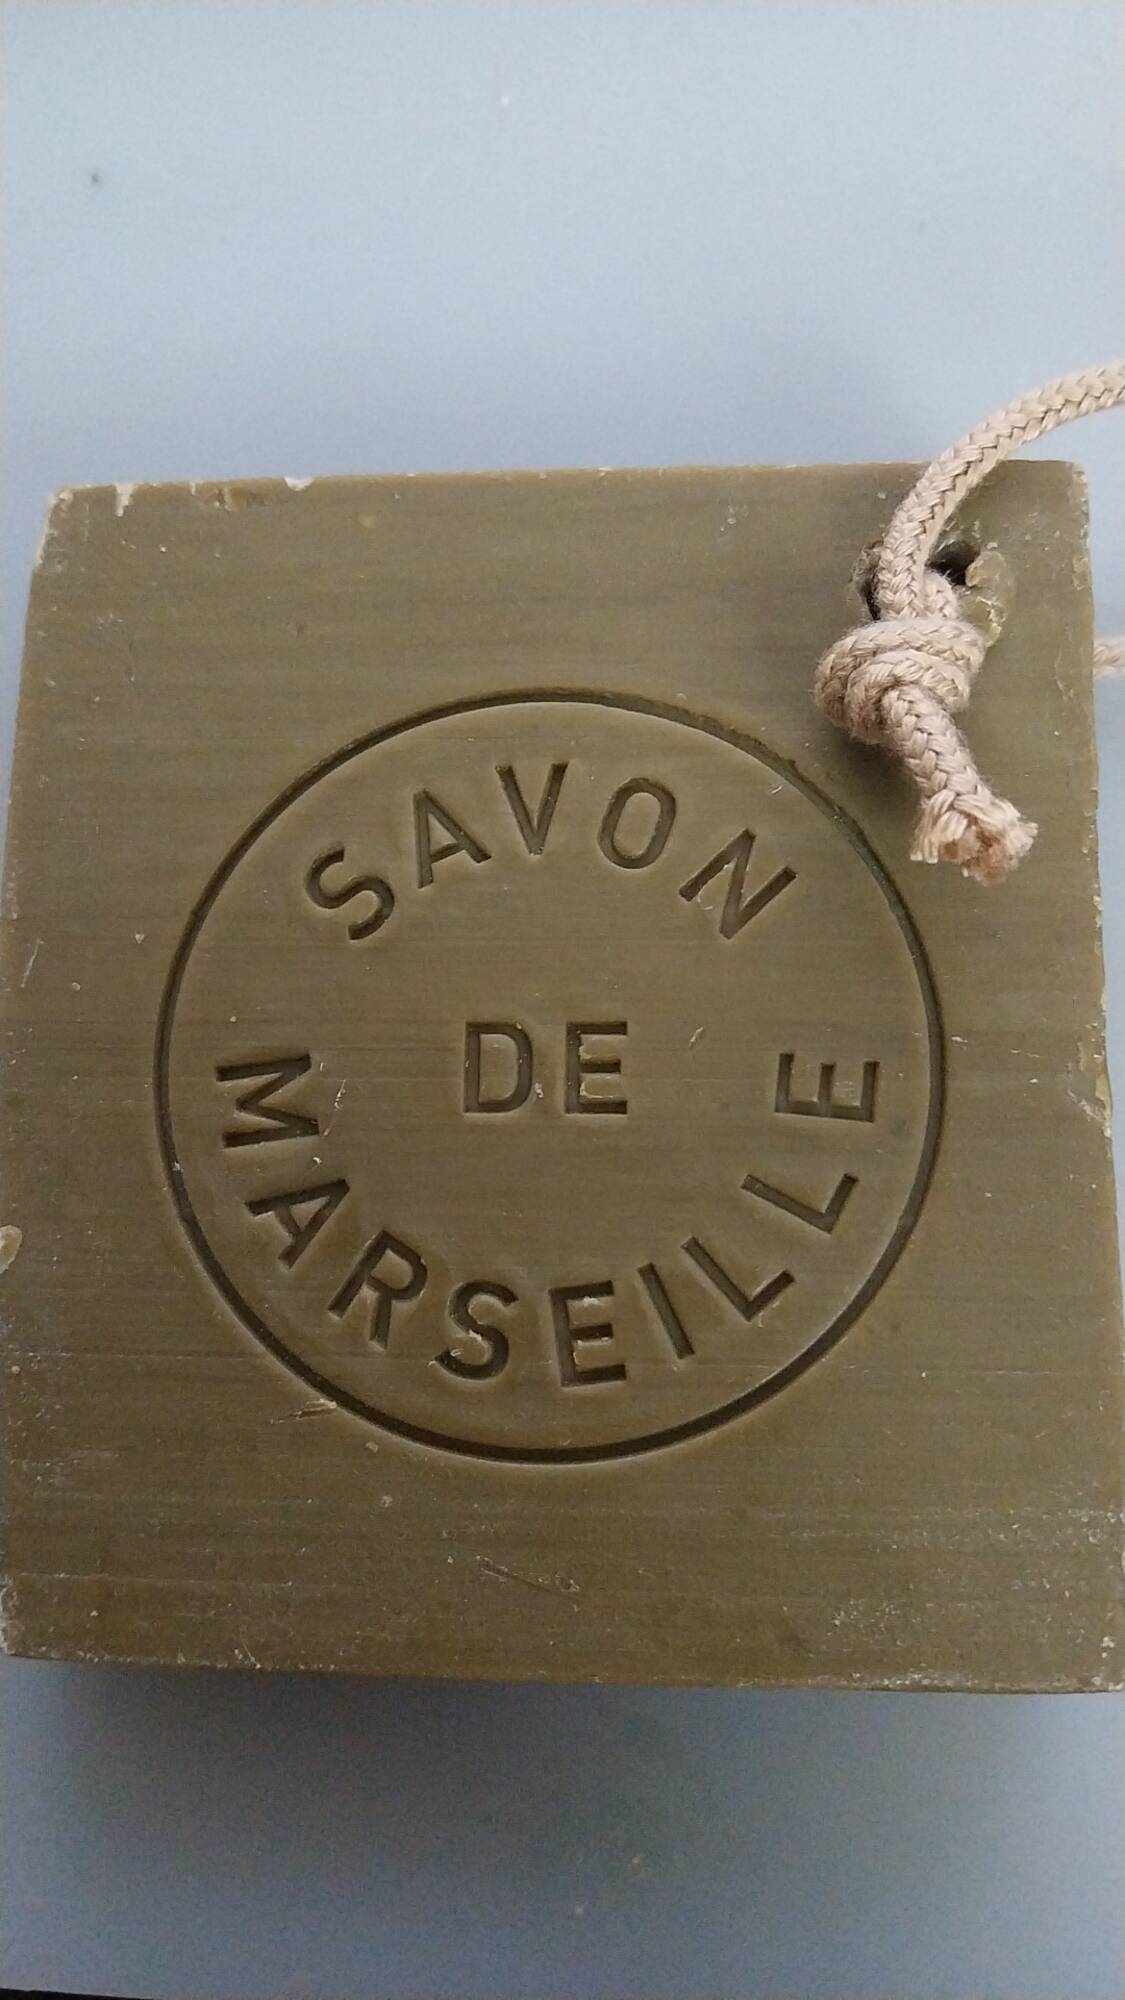 SAVON DE MARSEILLE - Tranche de Marseille - Savon pur olive